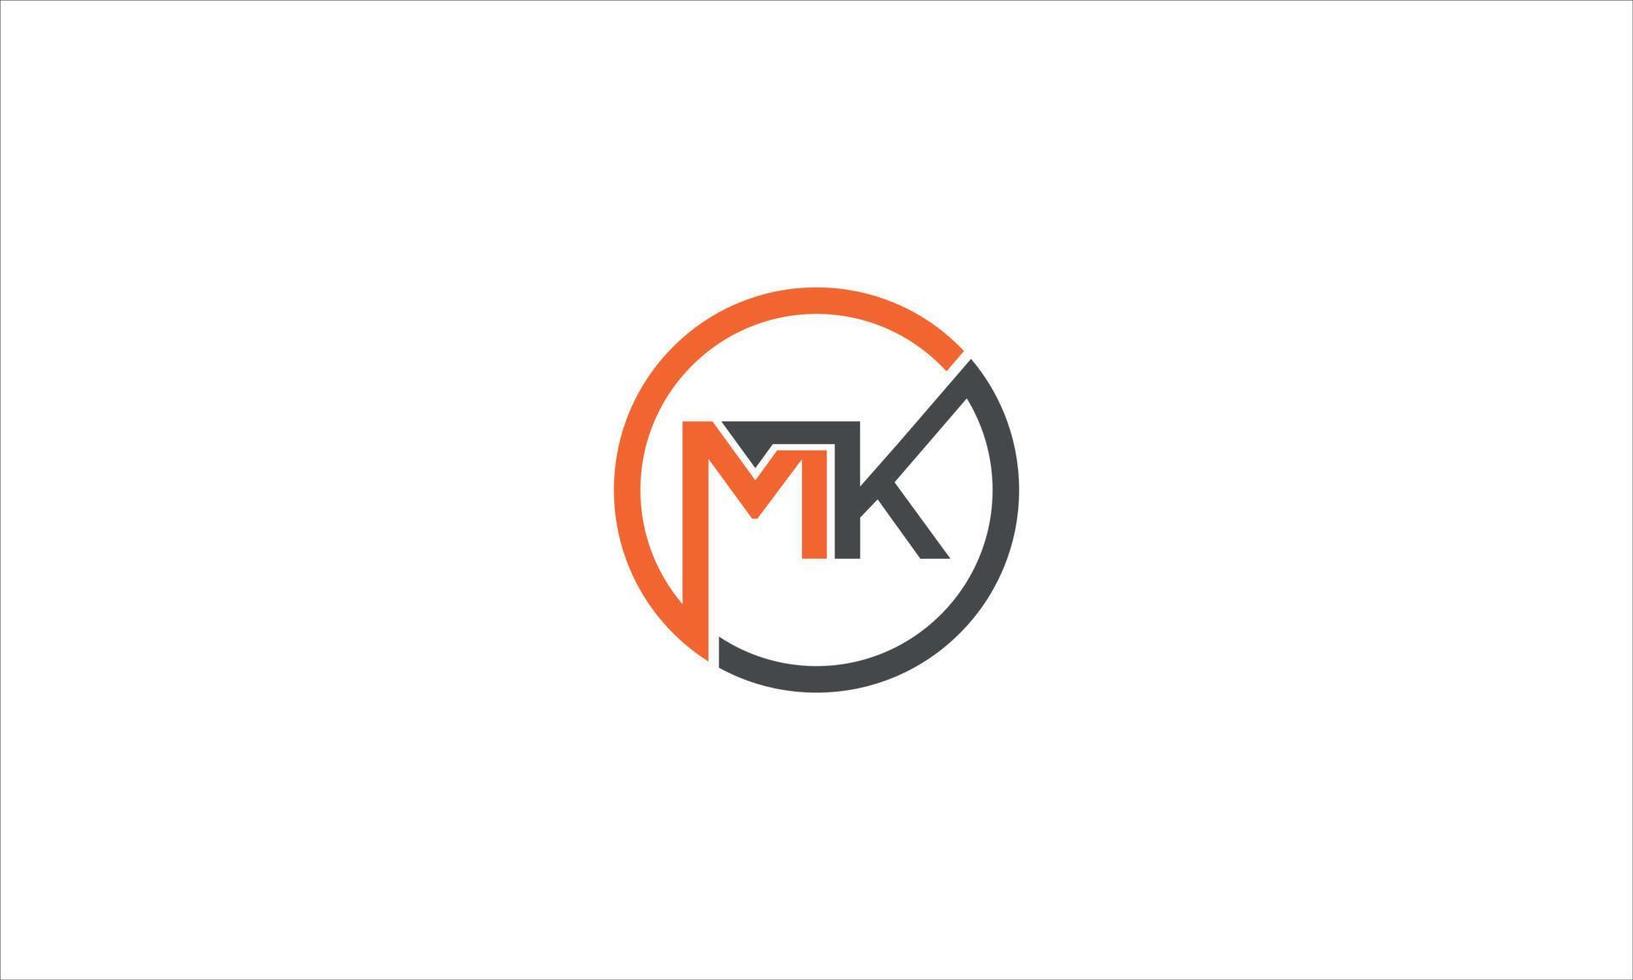 MK logo, Letter MK, MK letter logo design vector with Gradient colors. MK Letter Logo Design. Initial letters KM logo icon. Abstract letter KM logotype logo design template. KM logo Pro Vector